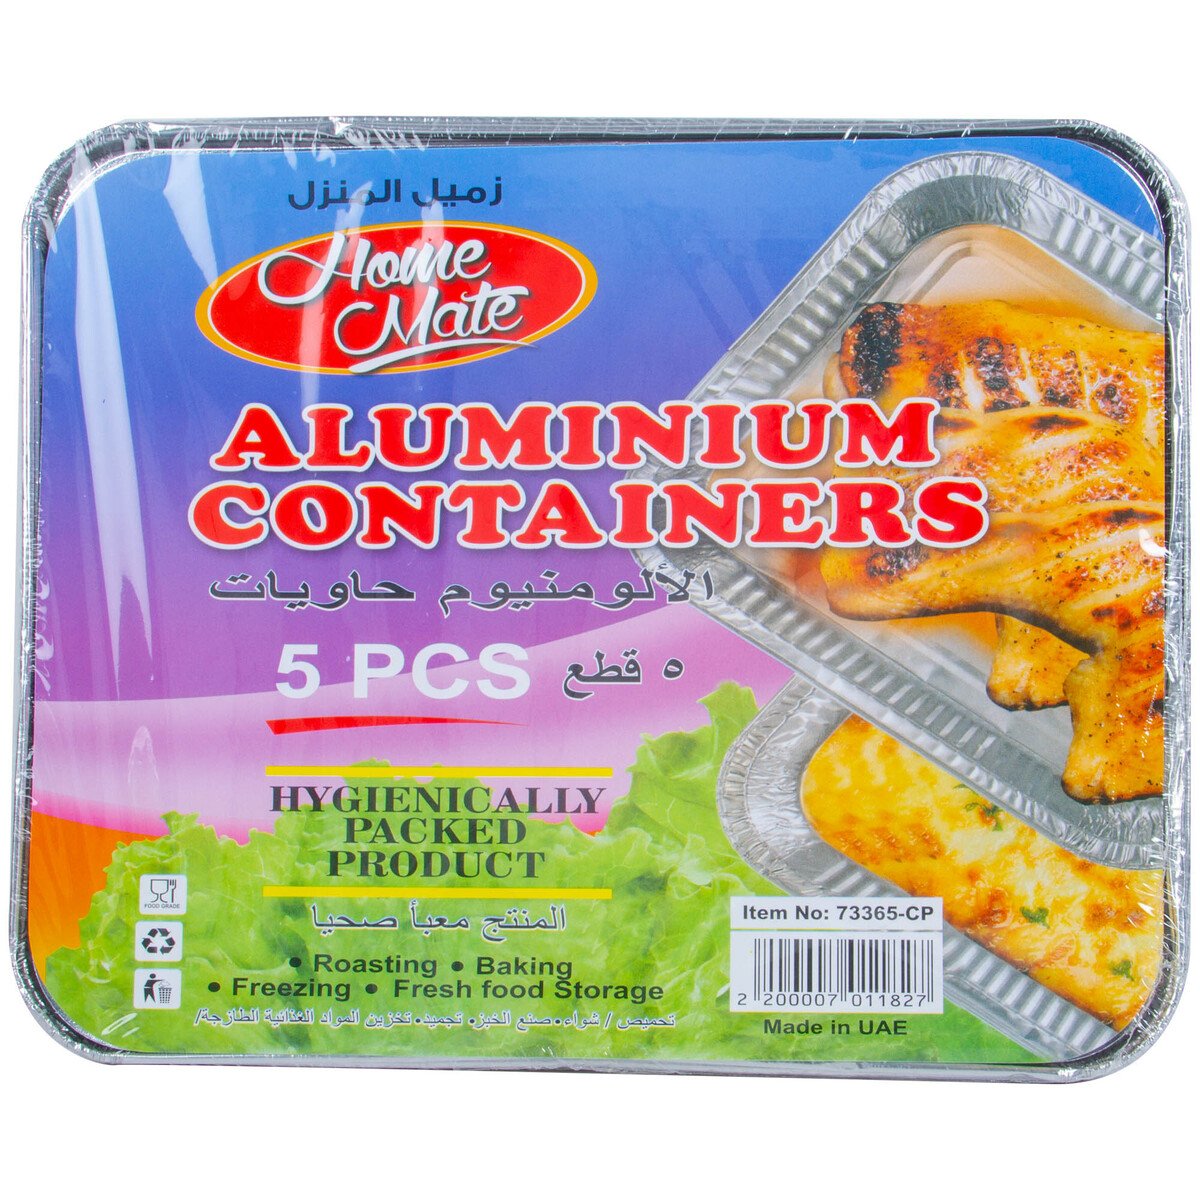 Home Mate Aluminium Containers 5pcs